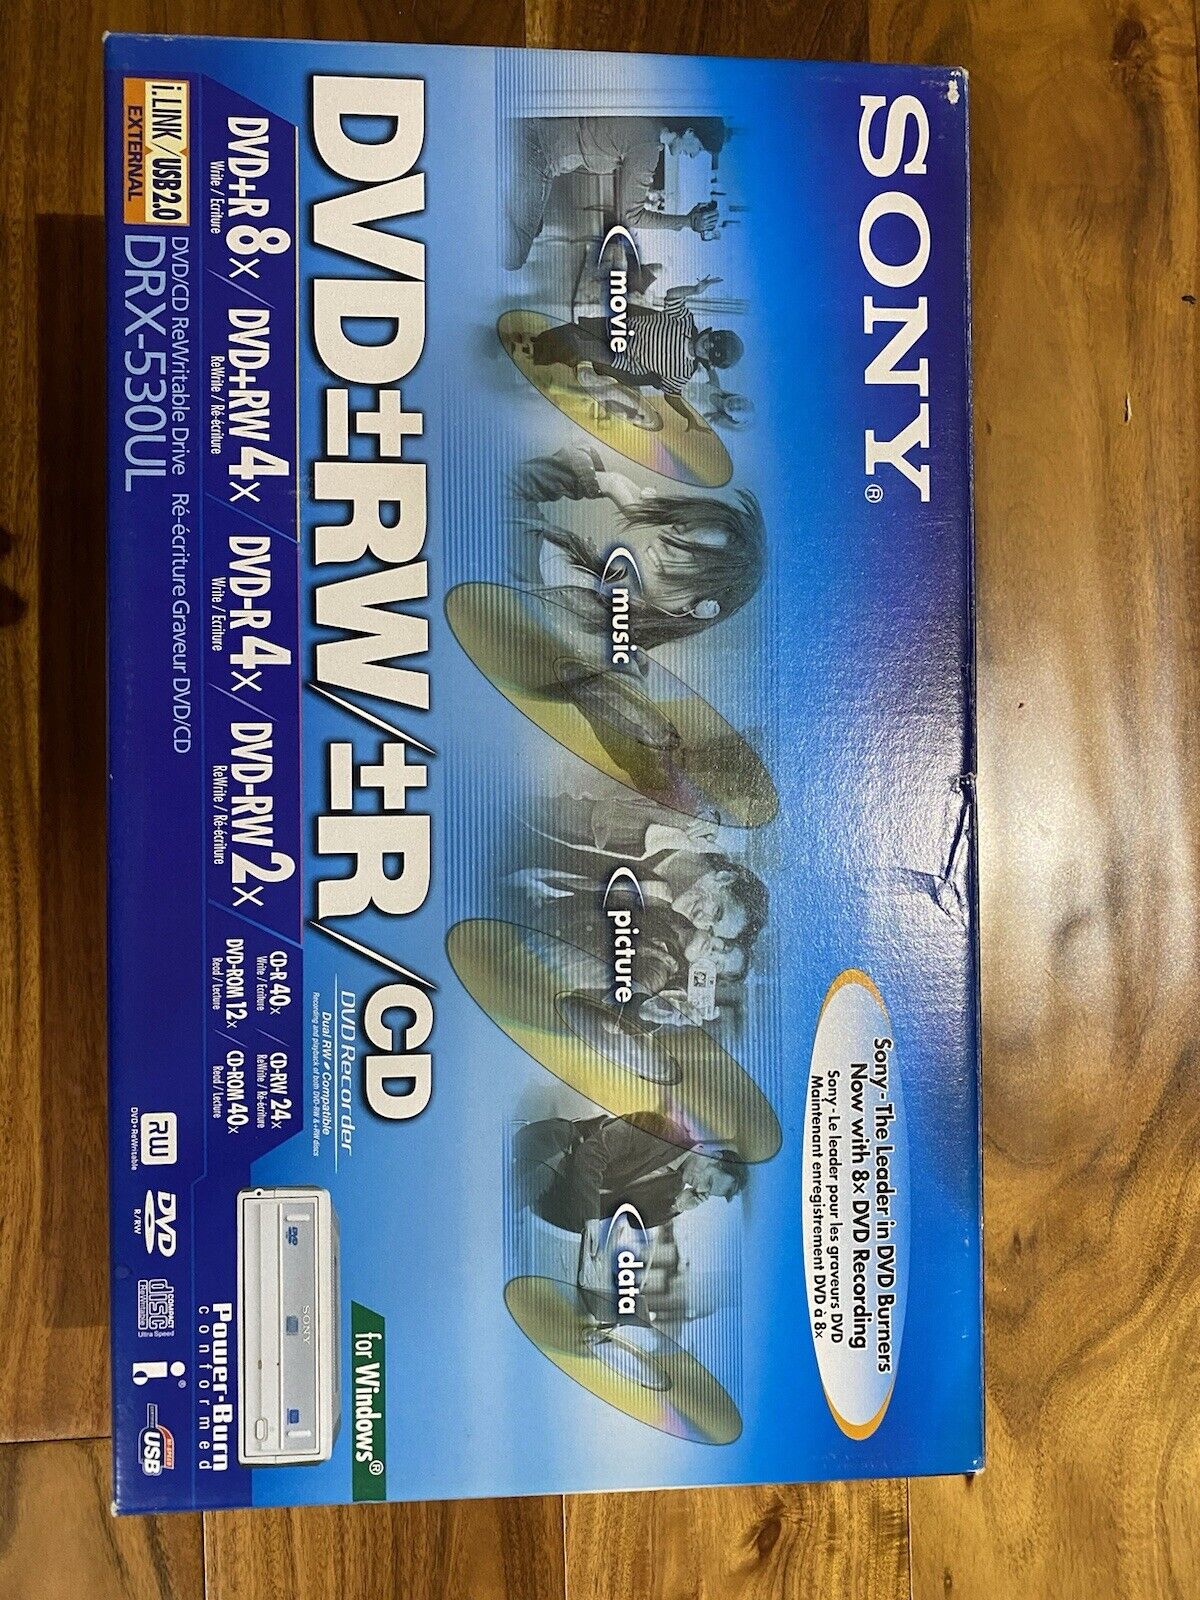 NEW Sony DRX-530UL dvd+rw+r dvd cd rewritable drive in box